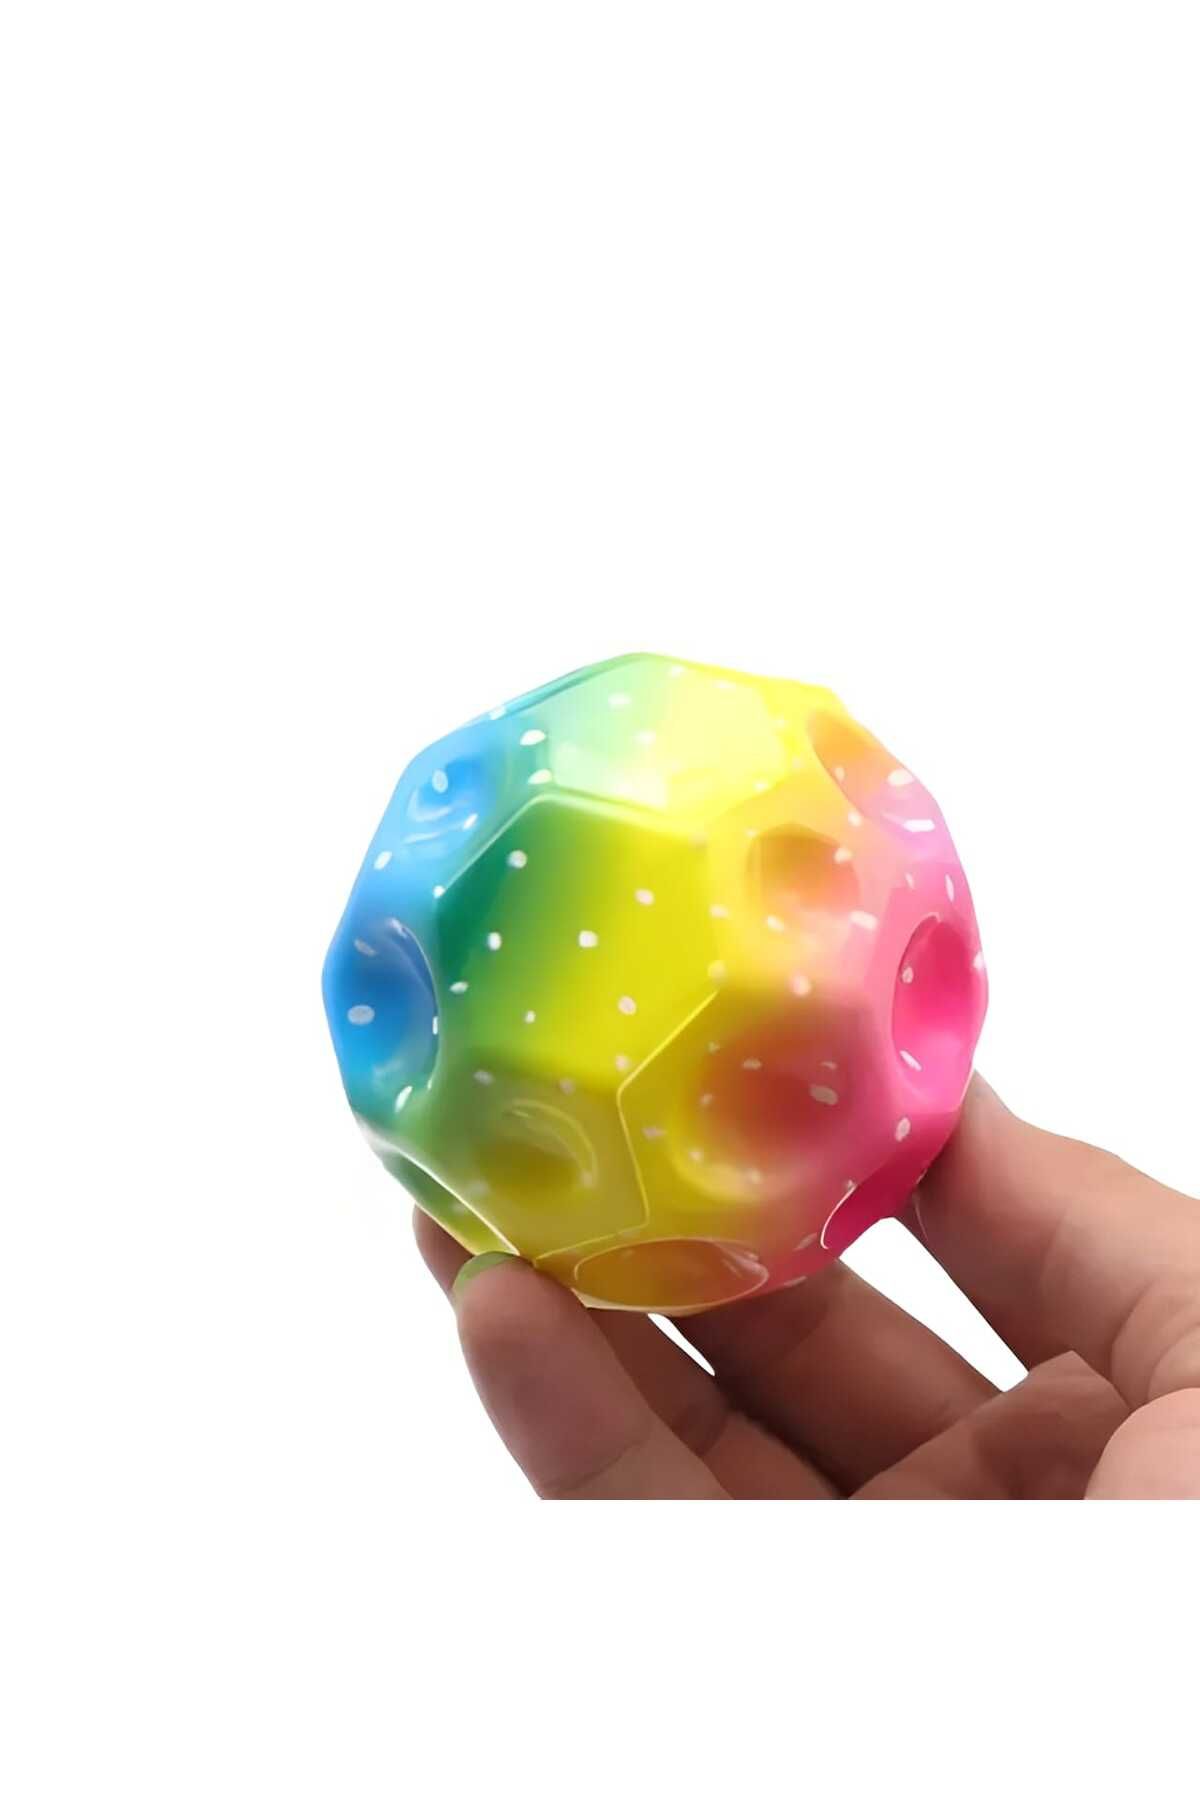 Hisar Yükseğe Zıplayan Delikli Bouncer Ball Süper Uzay Topu 1 Adet gökkuşağı renkleri